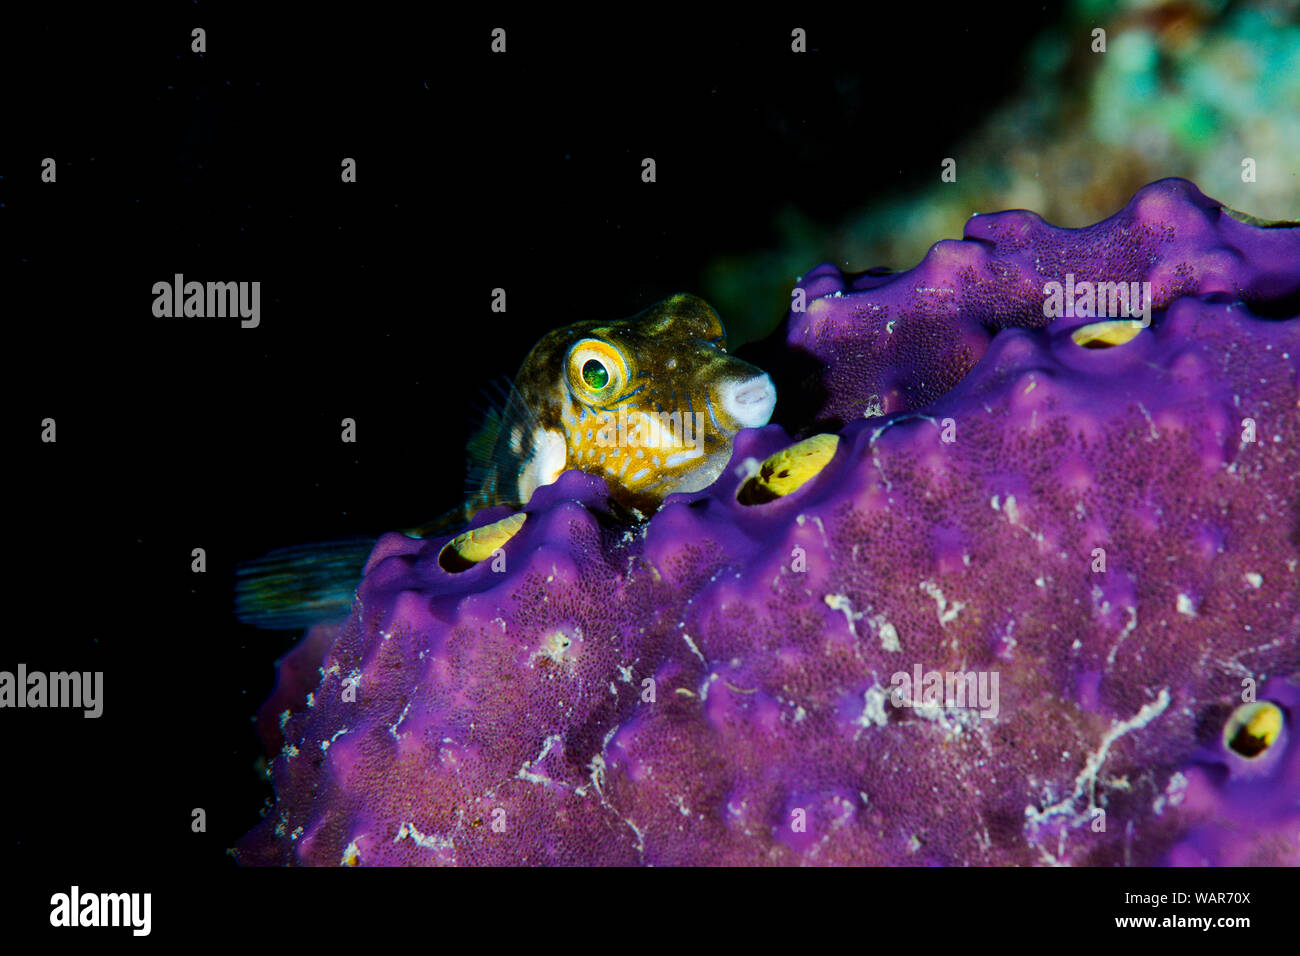 Kugelfische in einem Lilafarbenen schwamm liegen Stockfoto